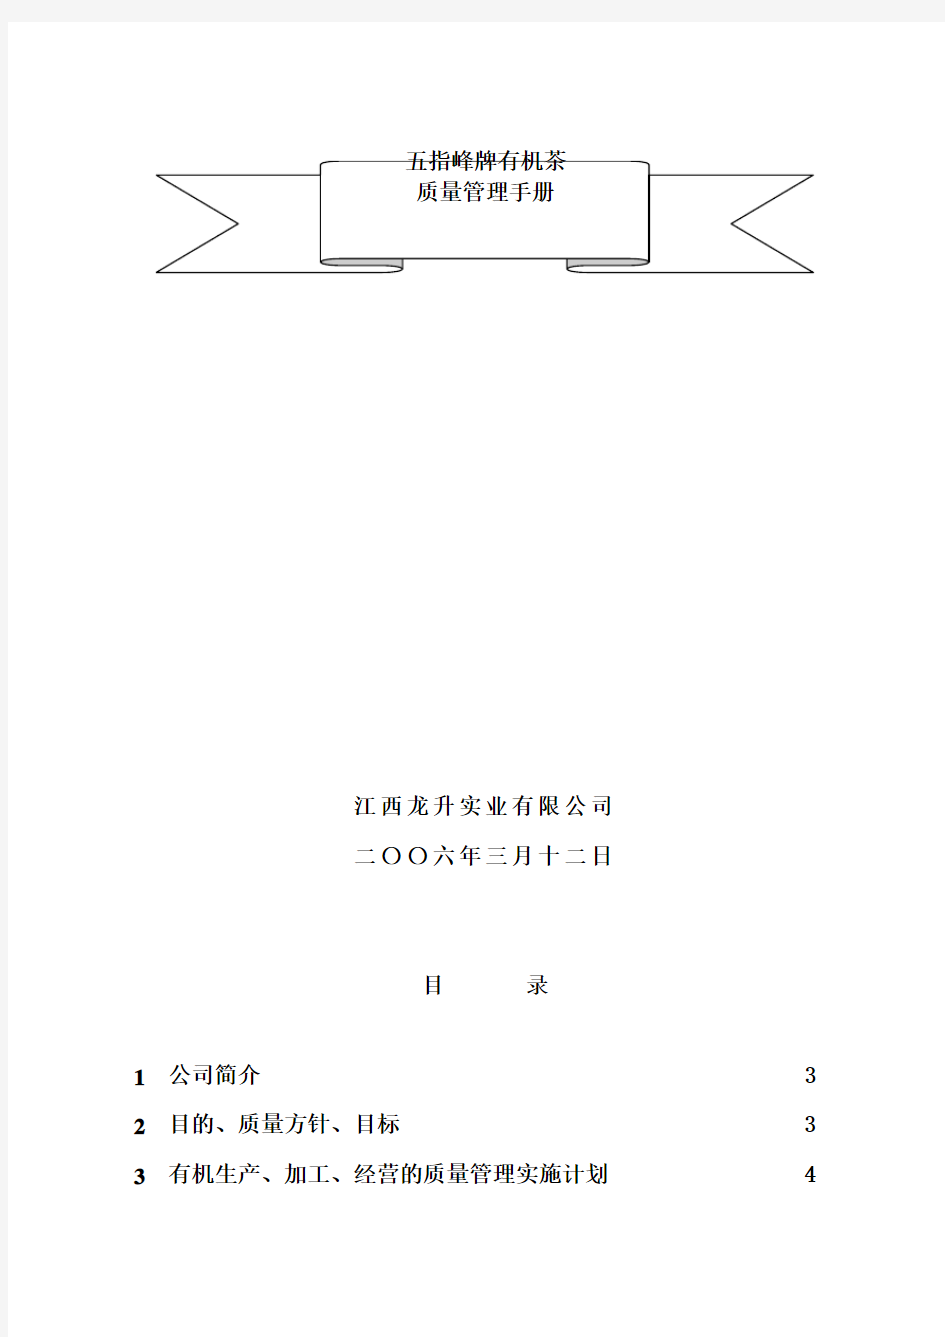 江西实业有限公司井冈山市五指峰茶厂-质量管理手册